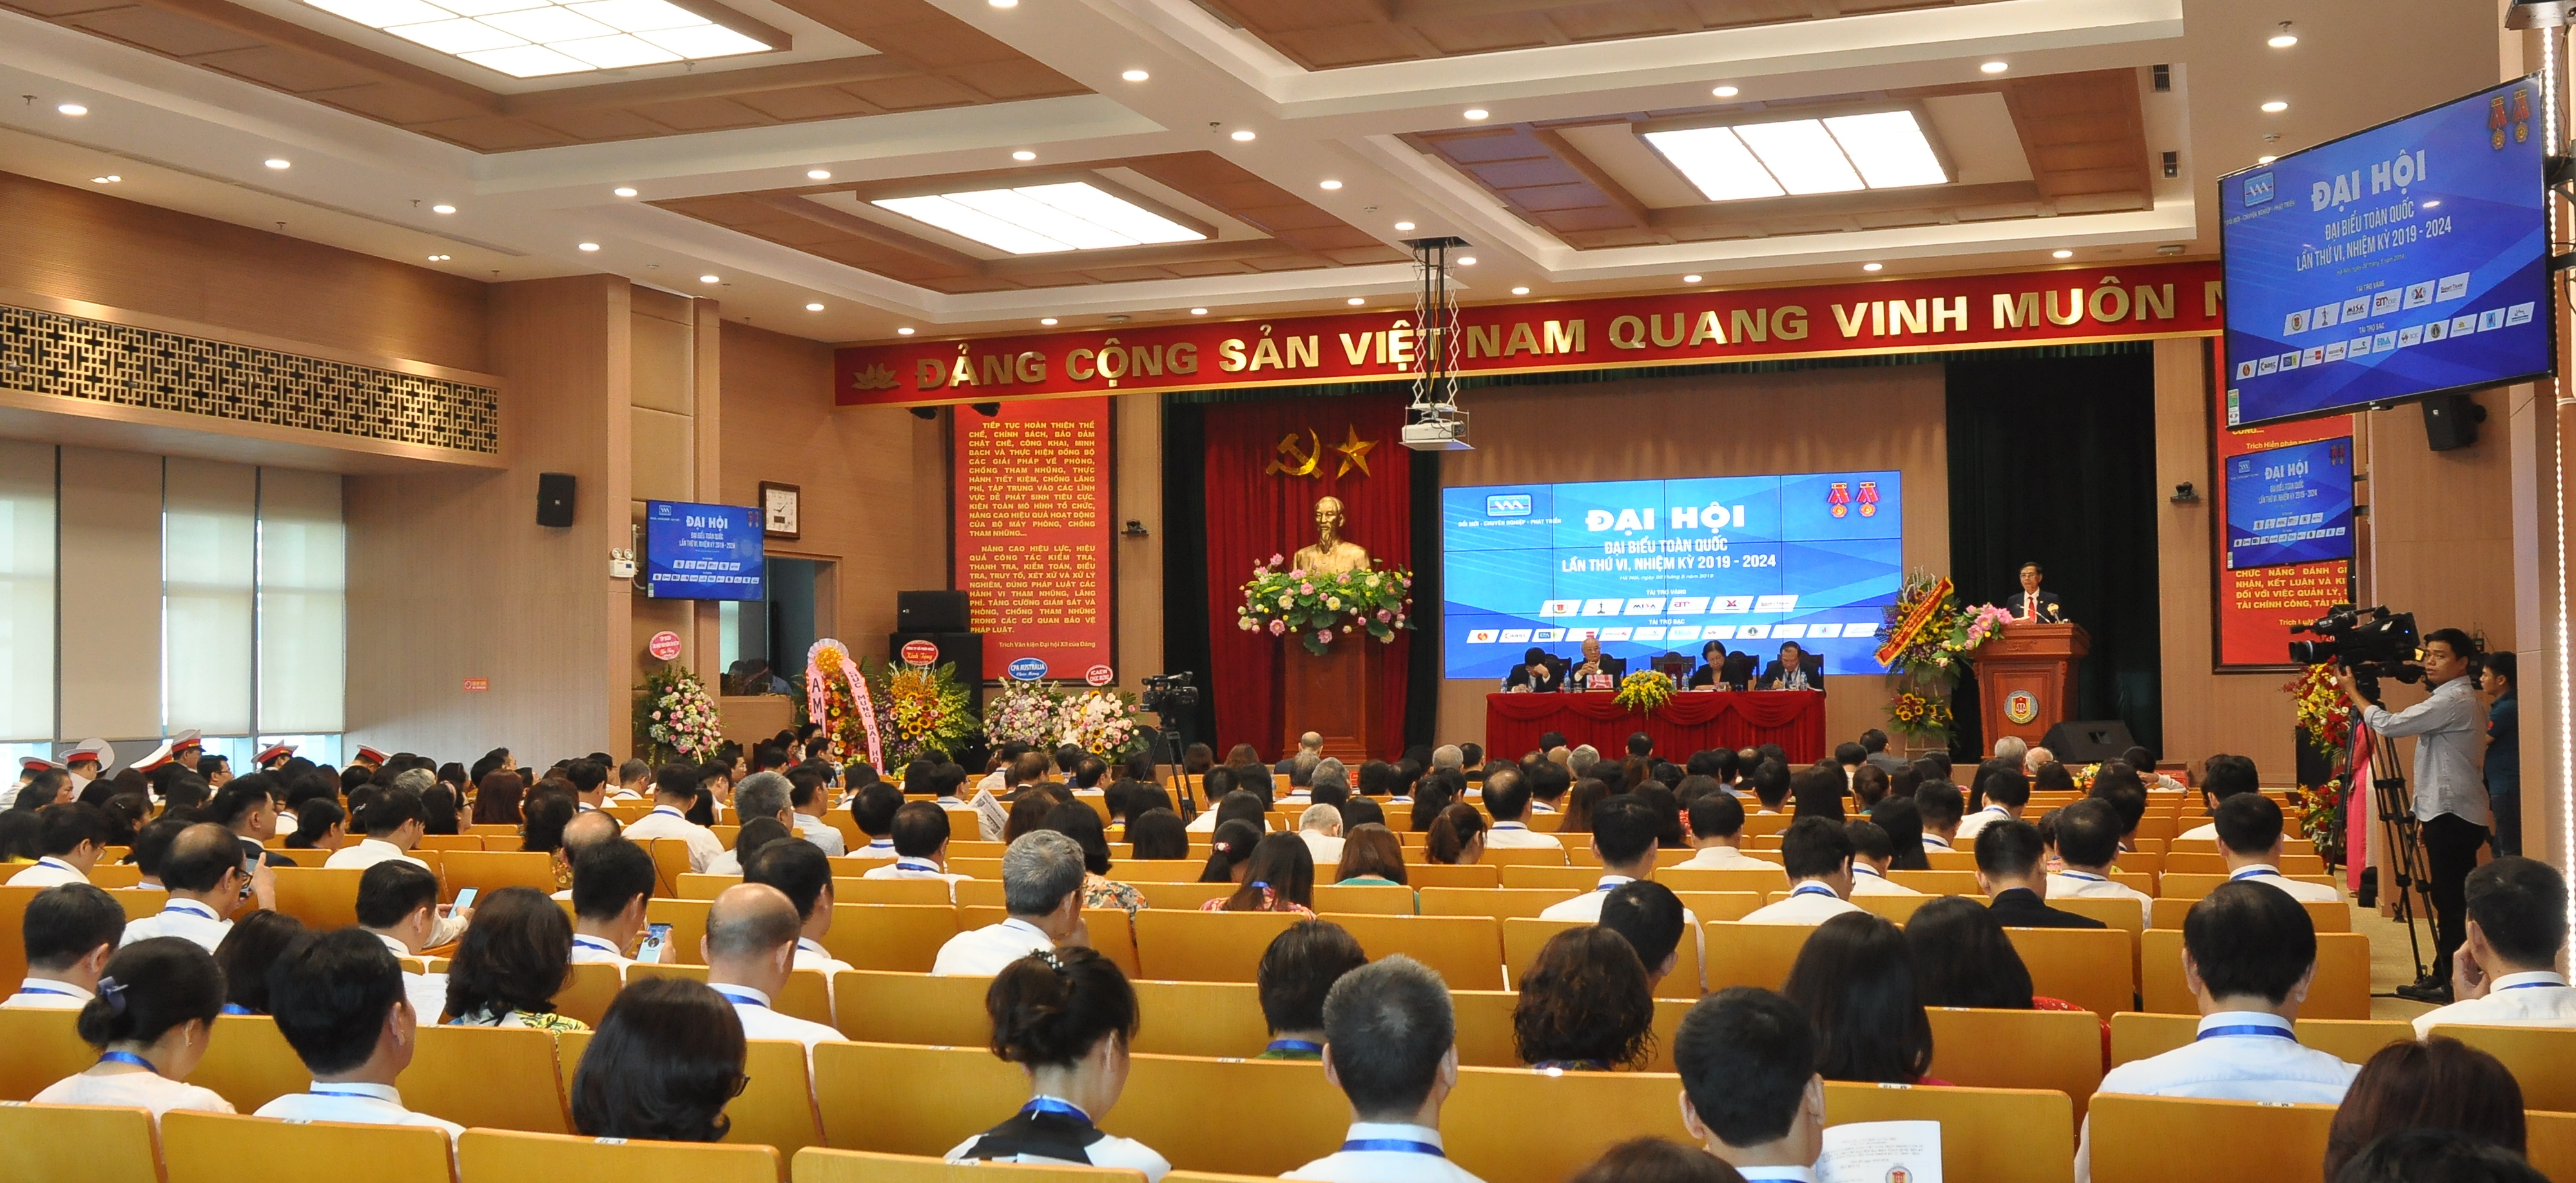 Hội Kế toán và Kiểm toán Việt Nam tổ chức Đại hội đại biểu toàn quốc lần thứ VI, nhiệm kỳ 2019 - 2024